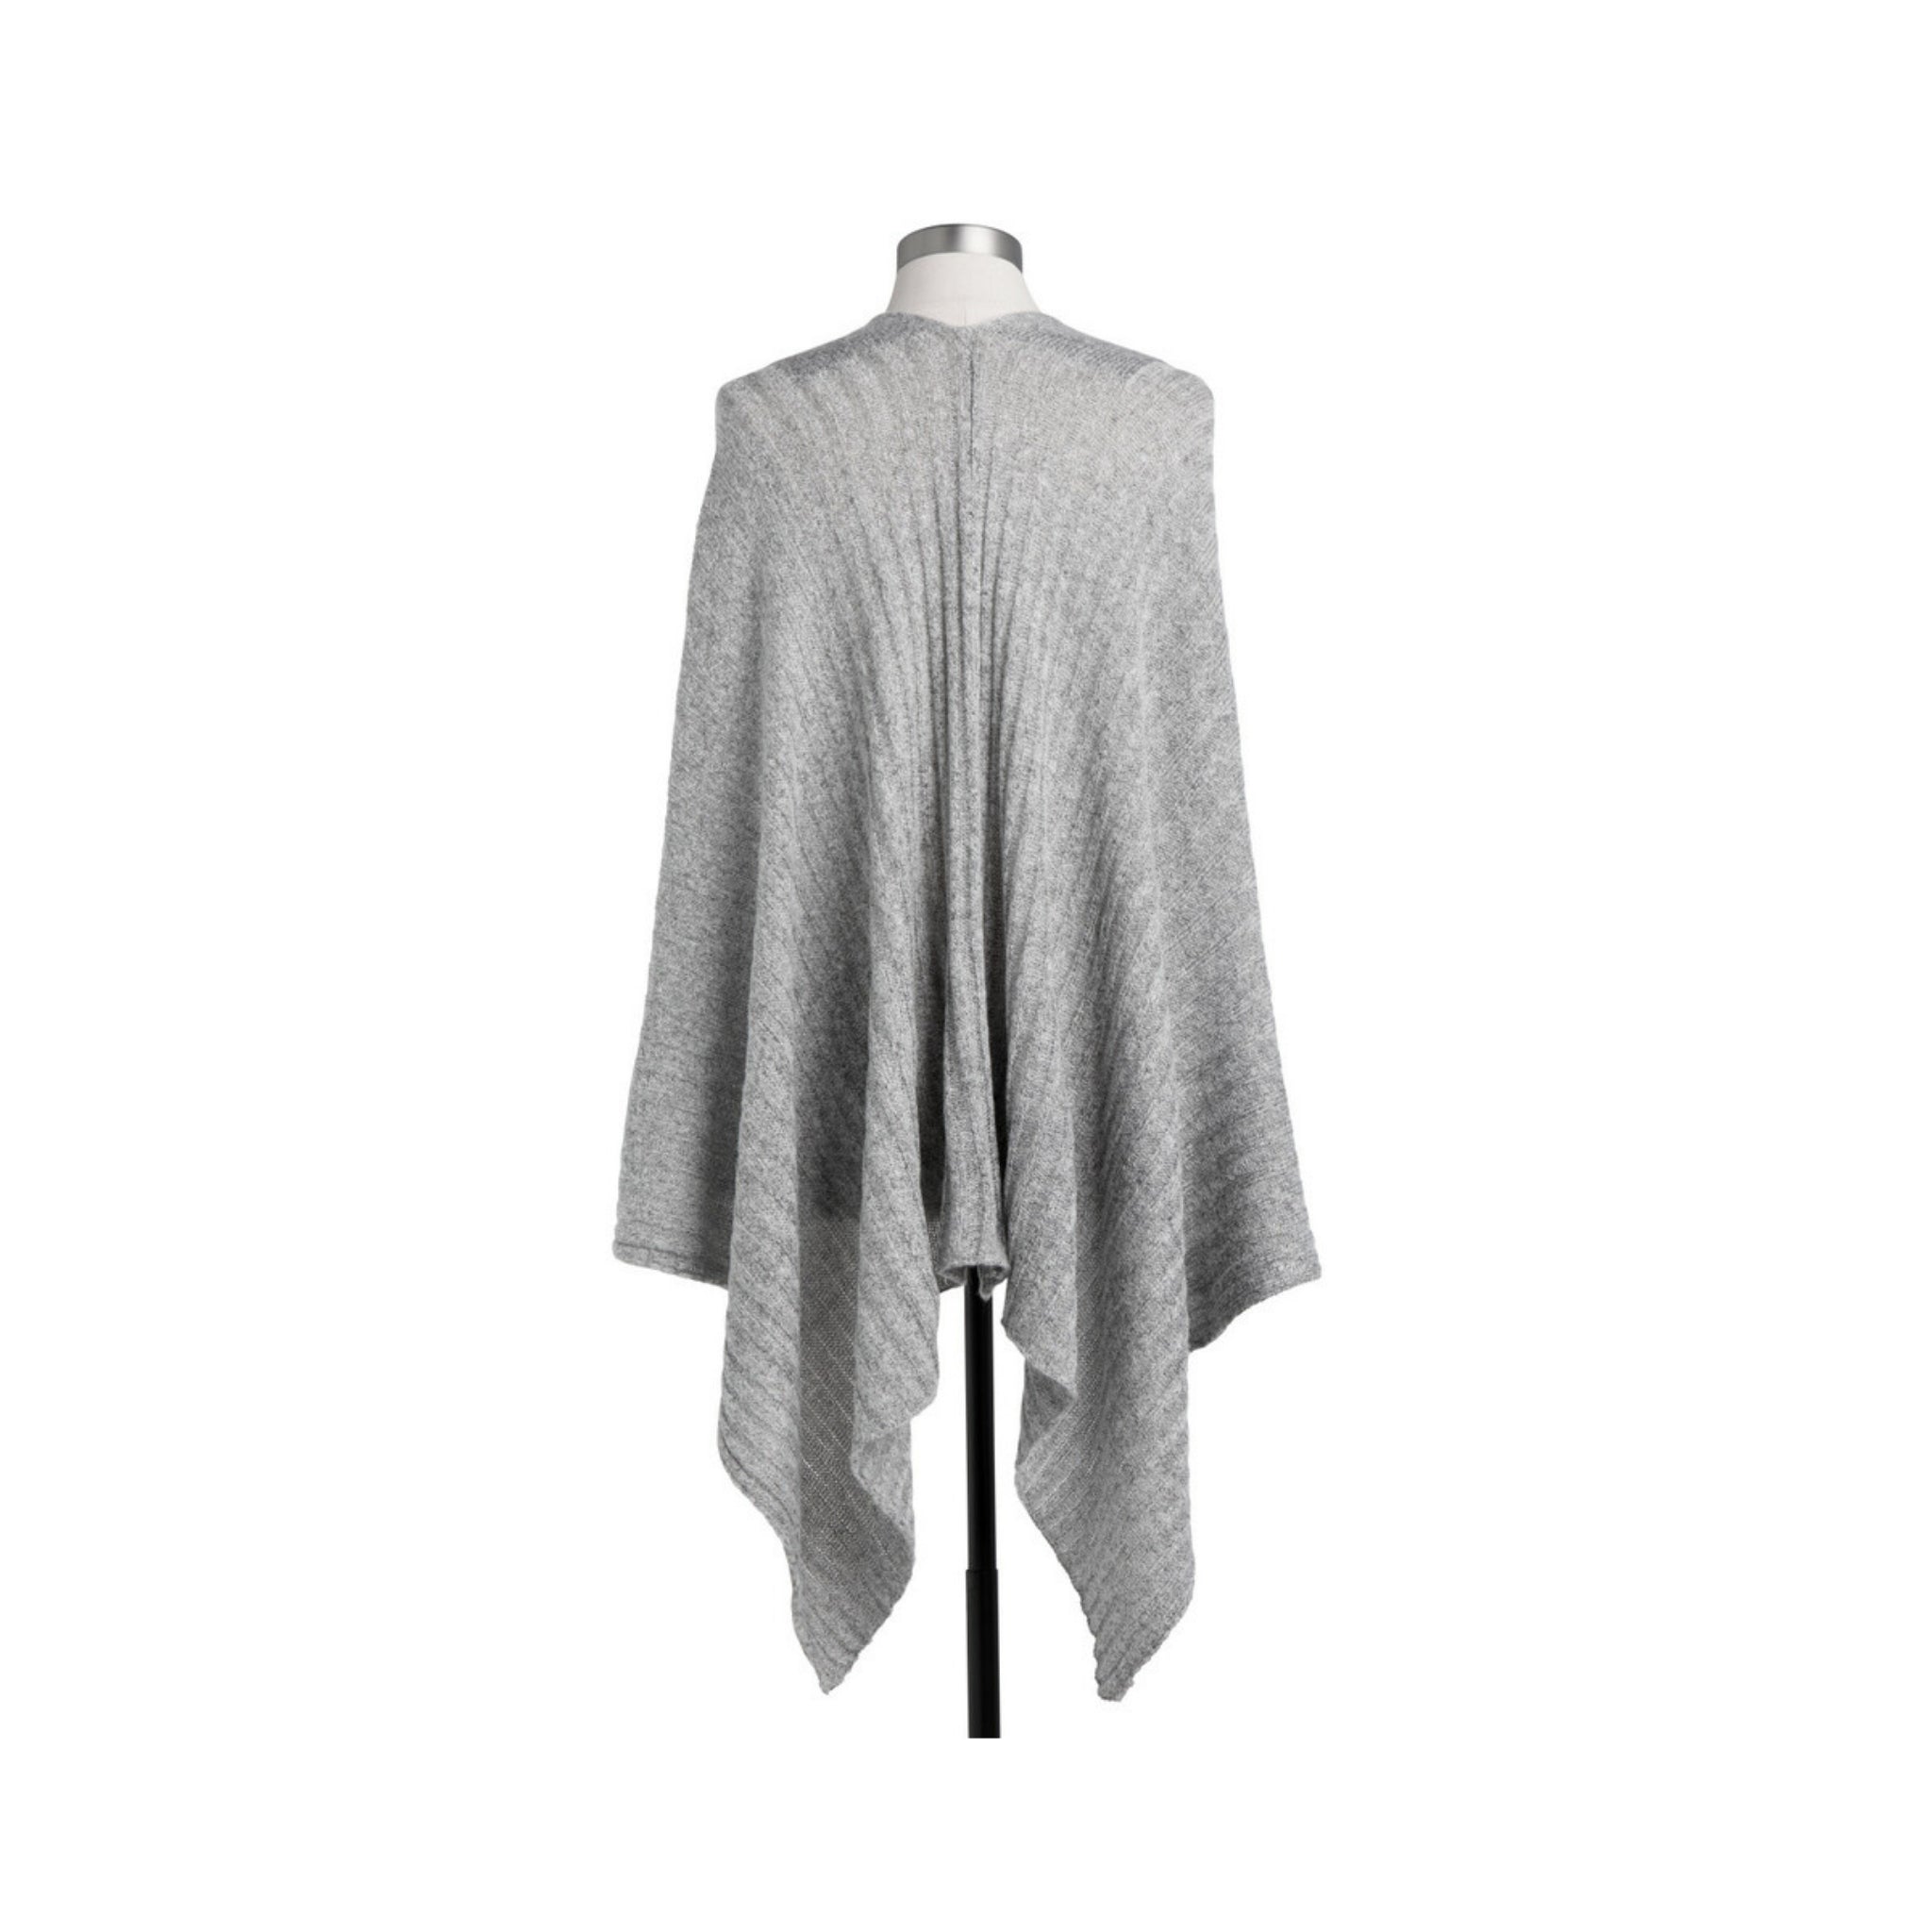 ribbed knit ruana wrap - gray